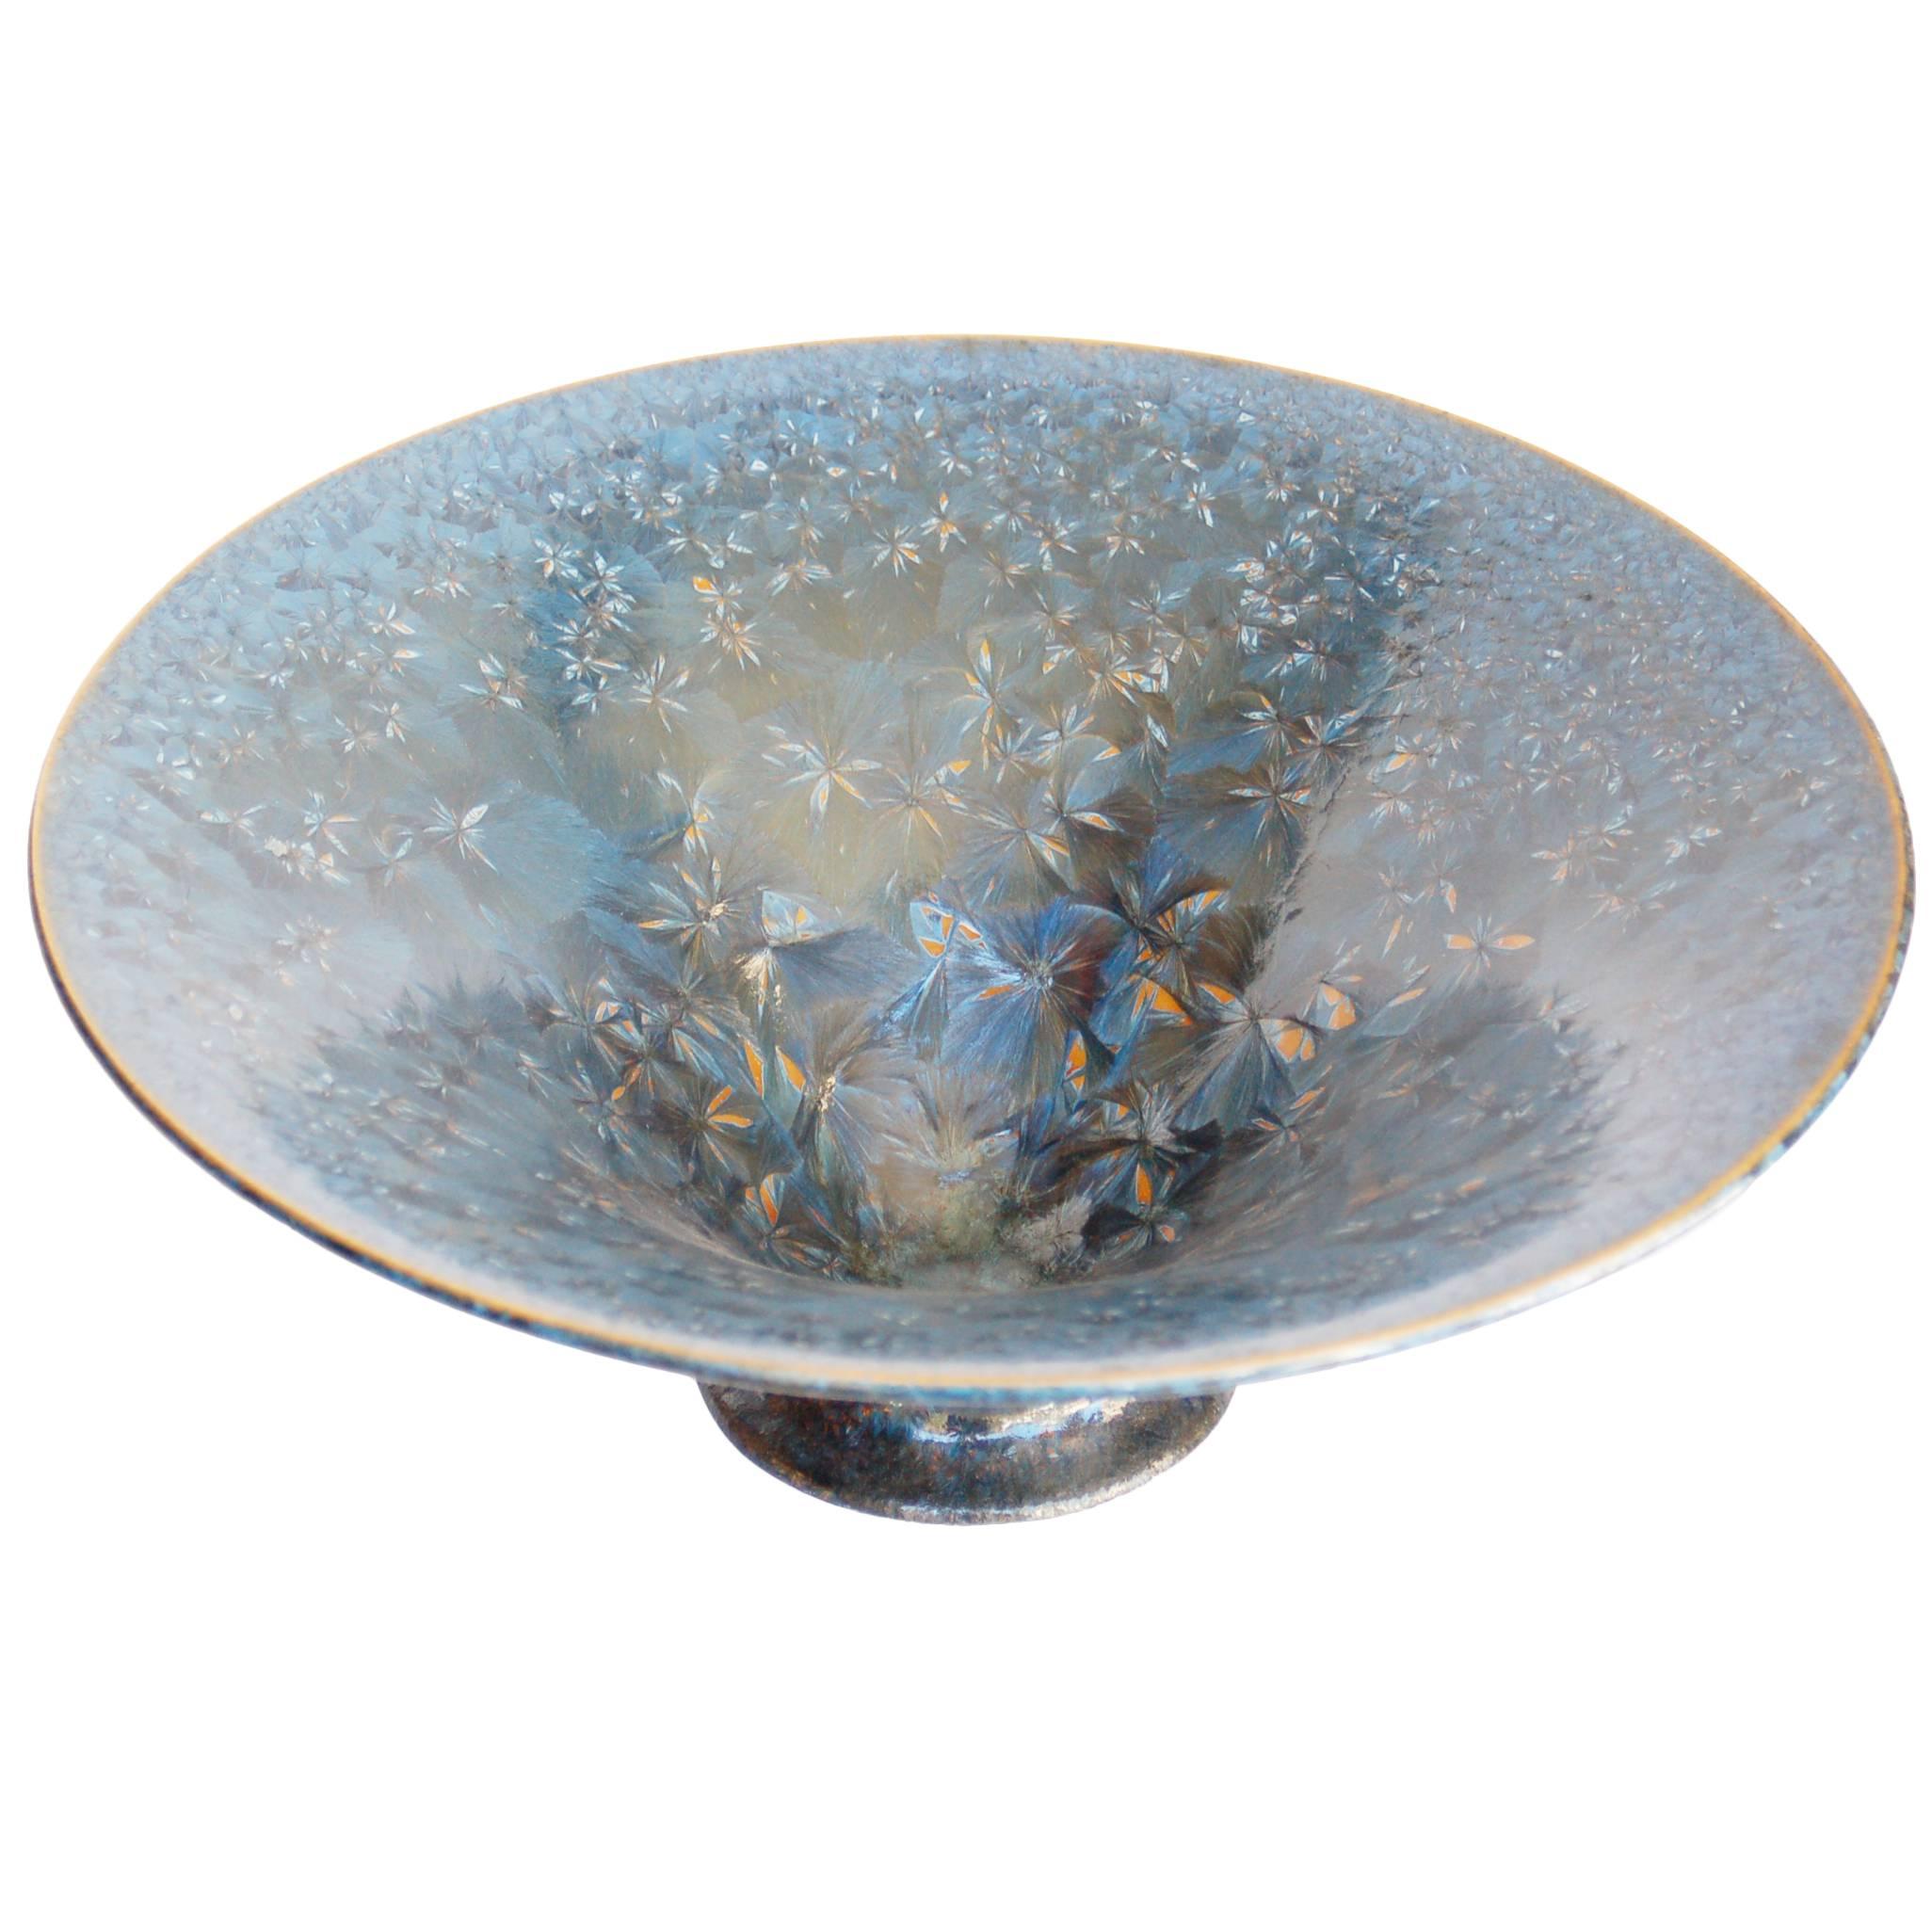 Blue Crystal Glazed Porcelain Bowl by Jörg Baumöller